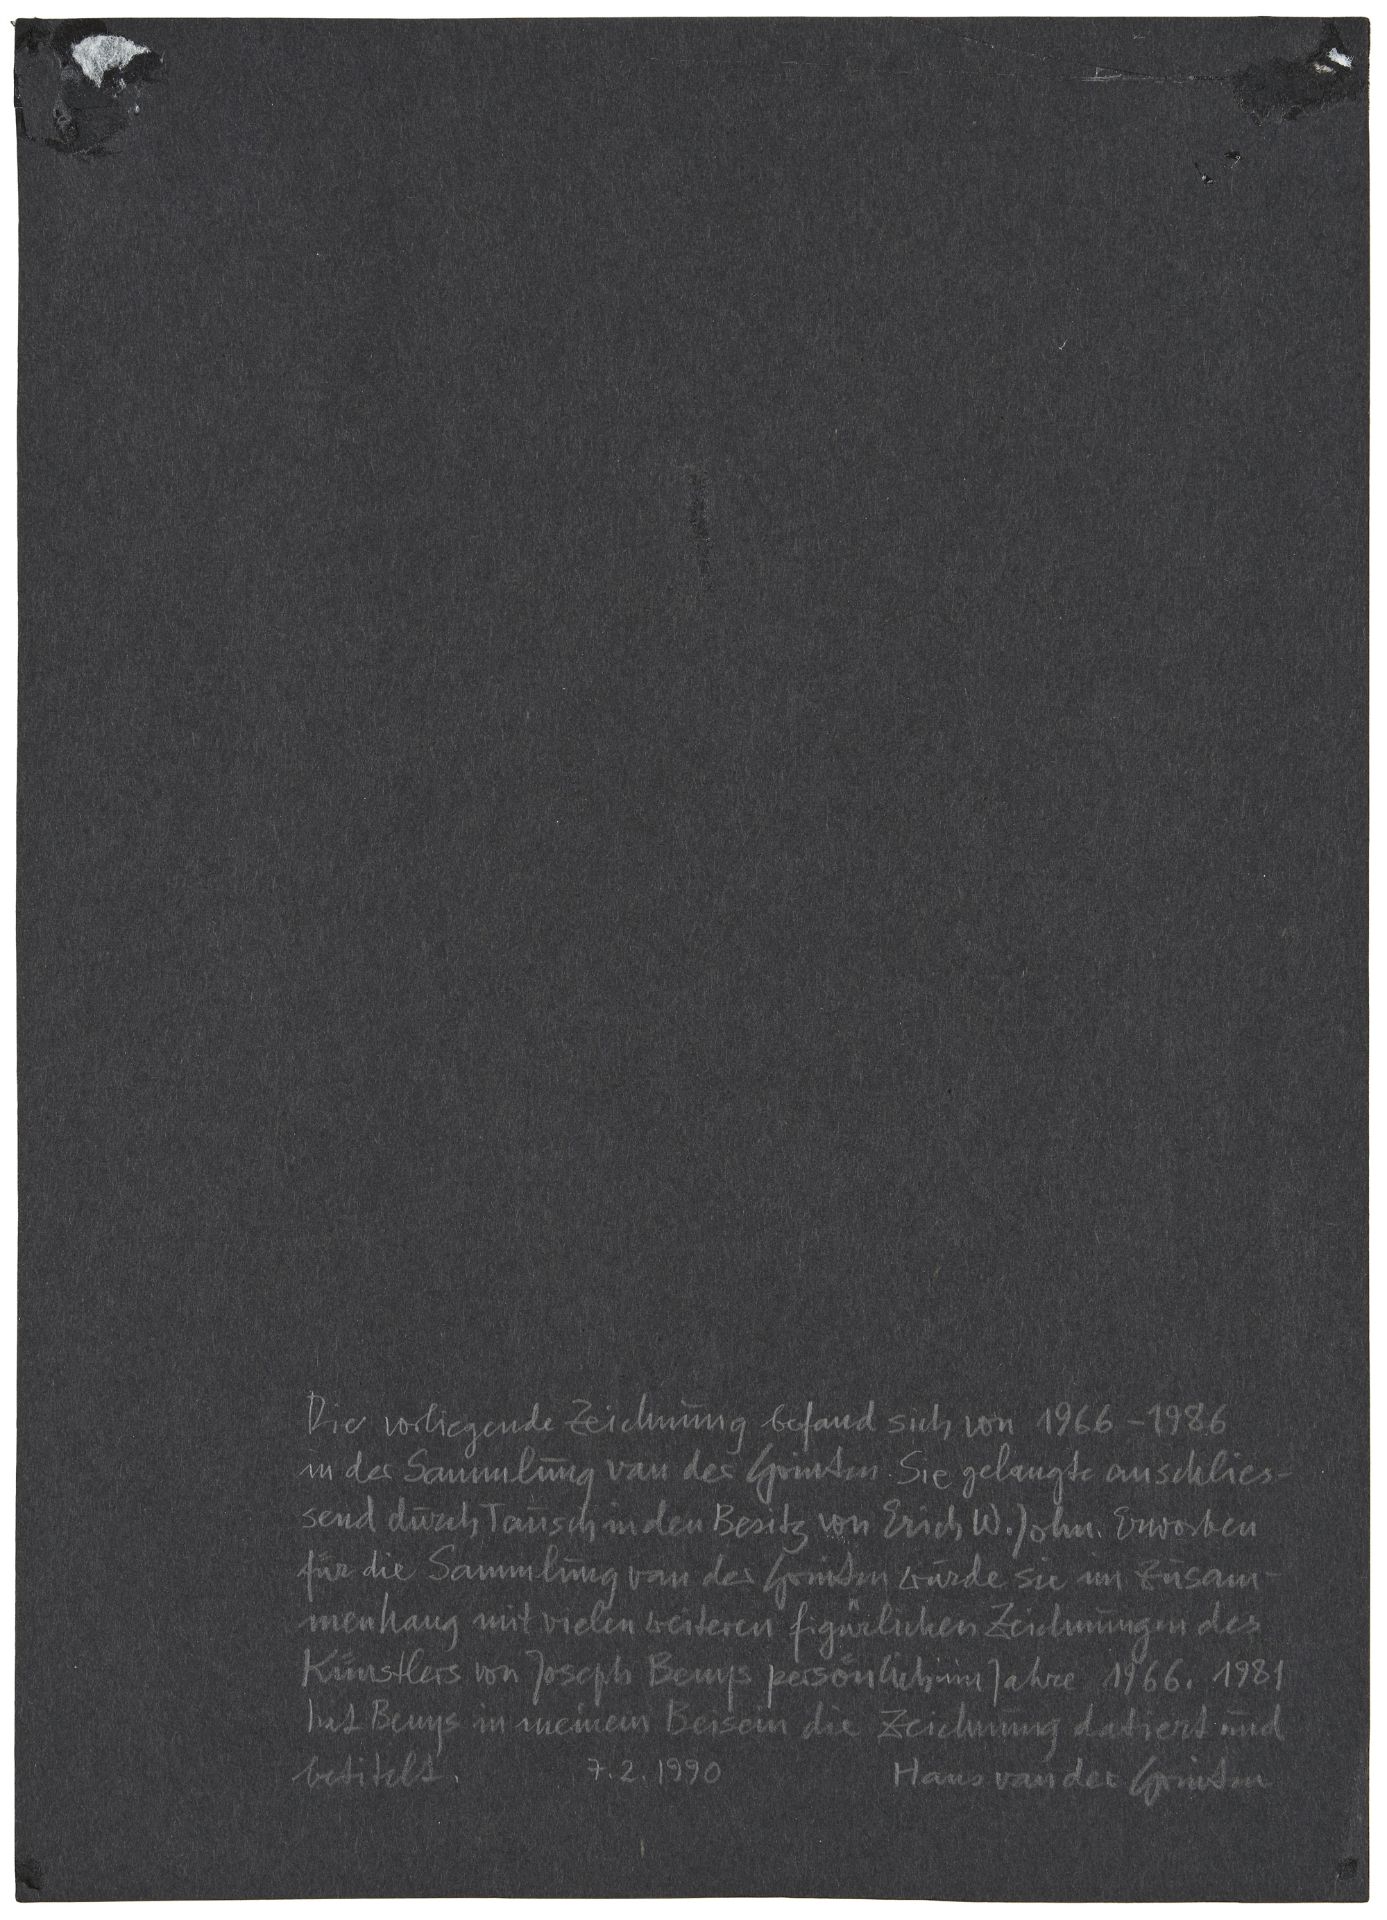 Joseph Beuys, Frau mit kleinem Hirsch und Käfig - Image 3 of 6